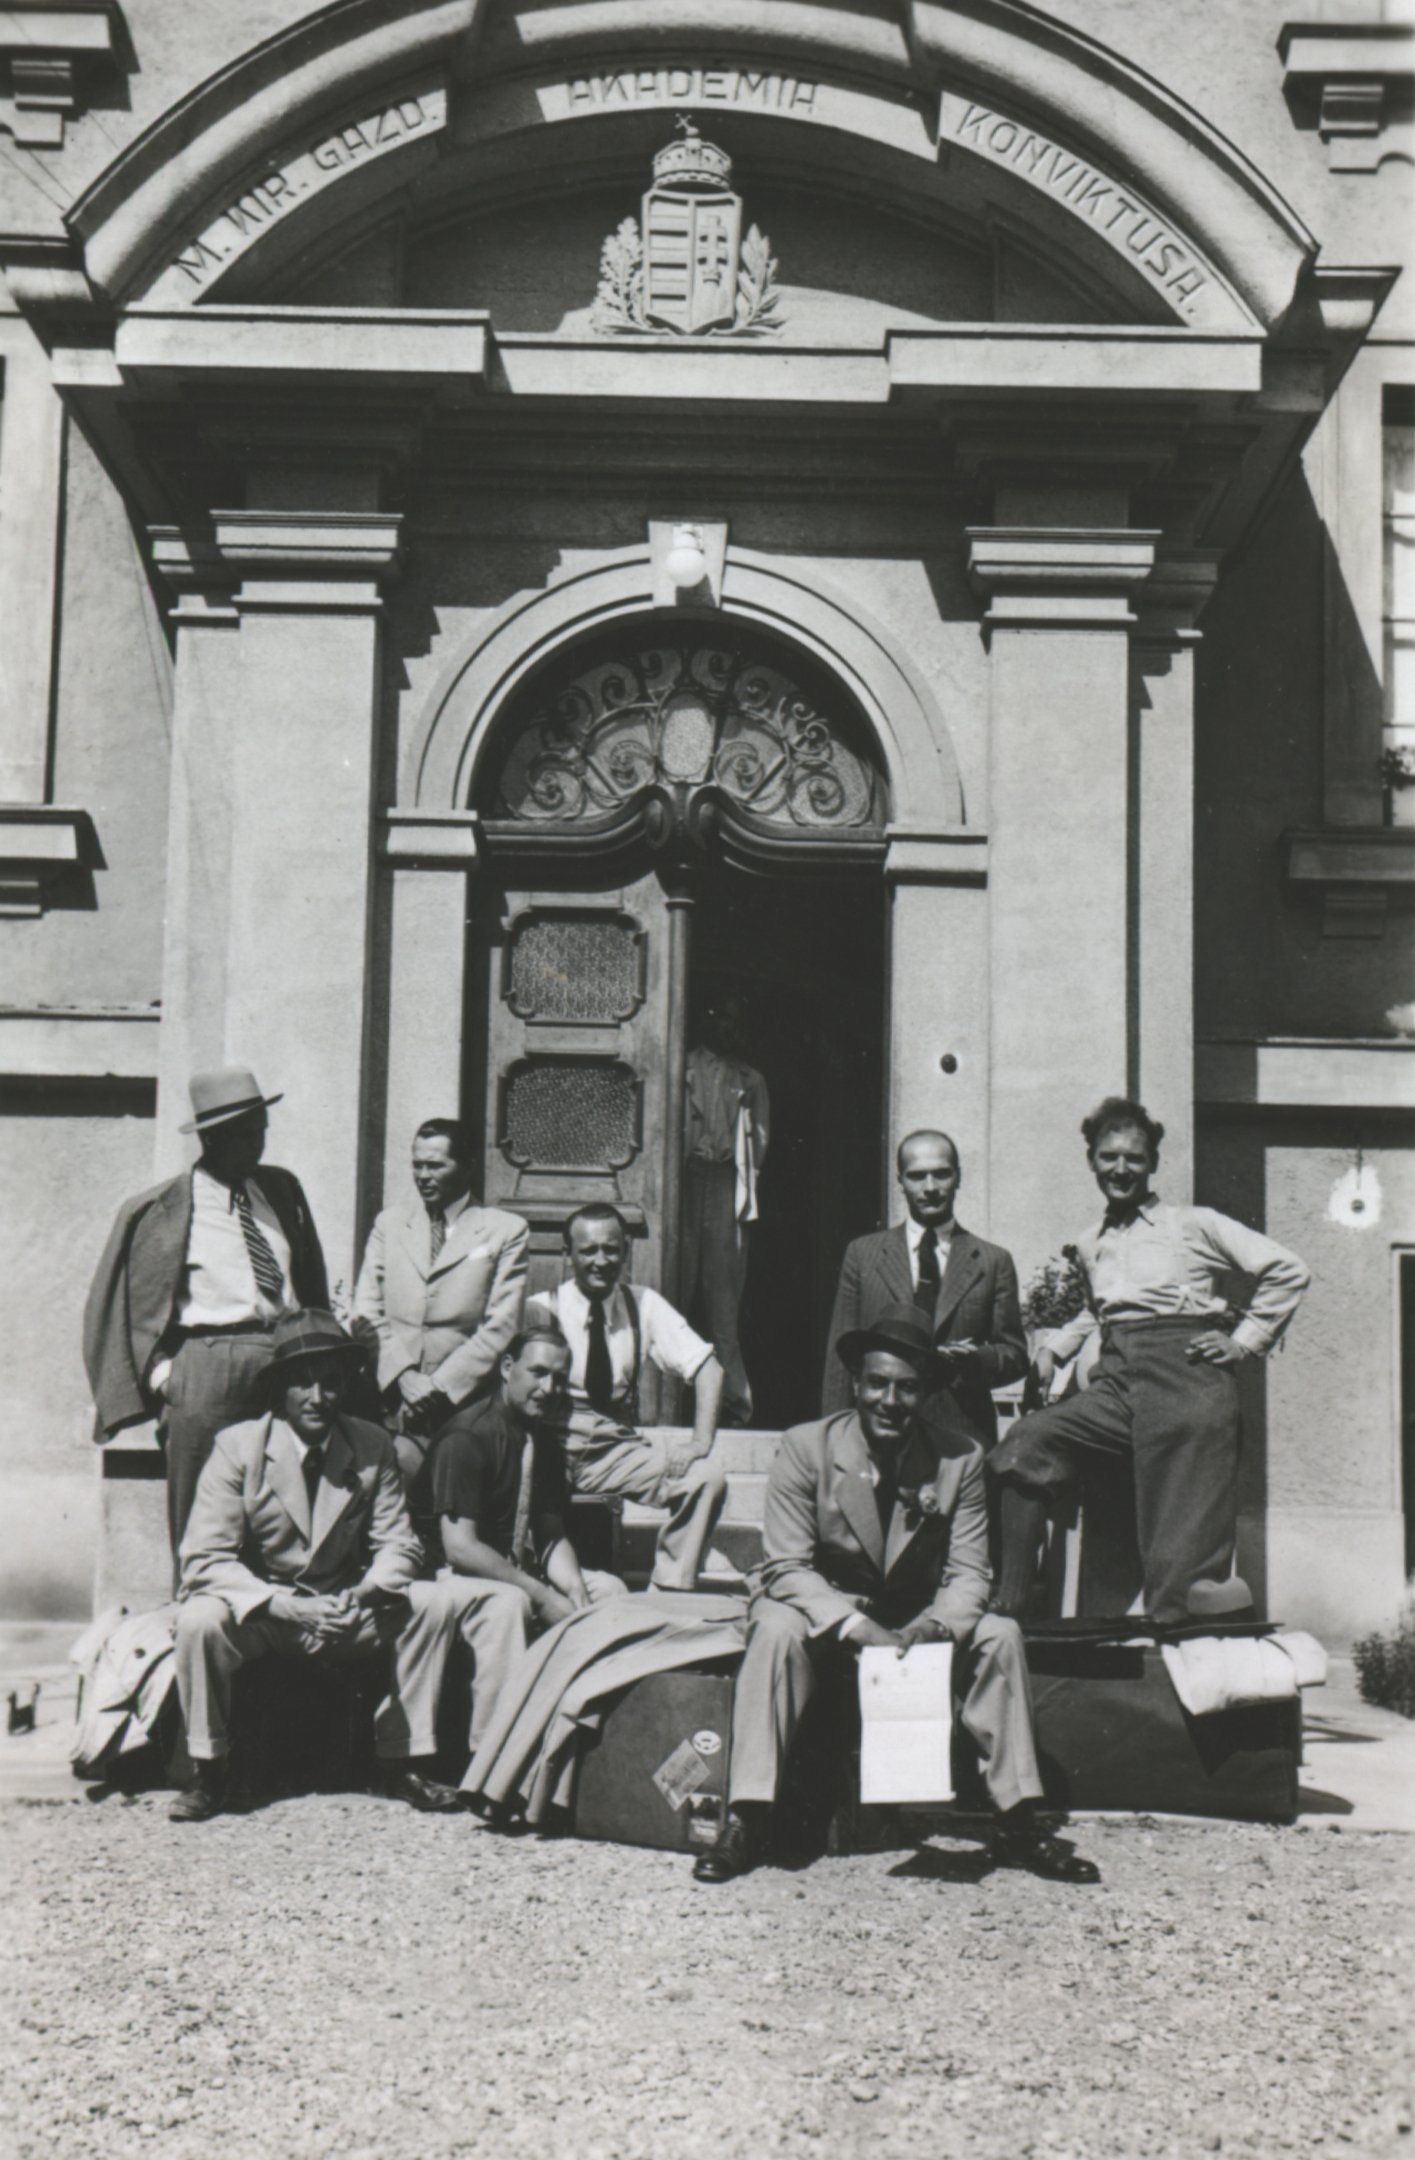 Elszállításra készen a konviktus kapujában. Magyaróvár, 1938. július (Magyar Környezetvédelmi és Vízügyi Múzeum - Duna Múzeum CC BY-NC-SA)